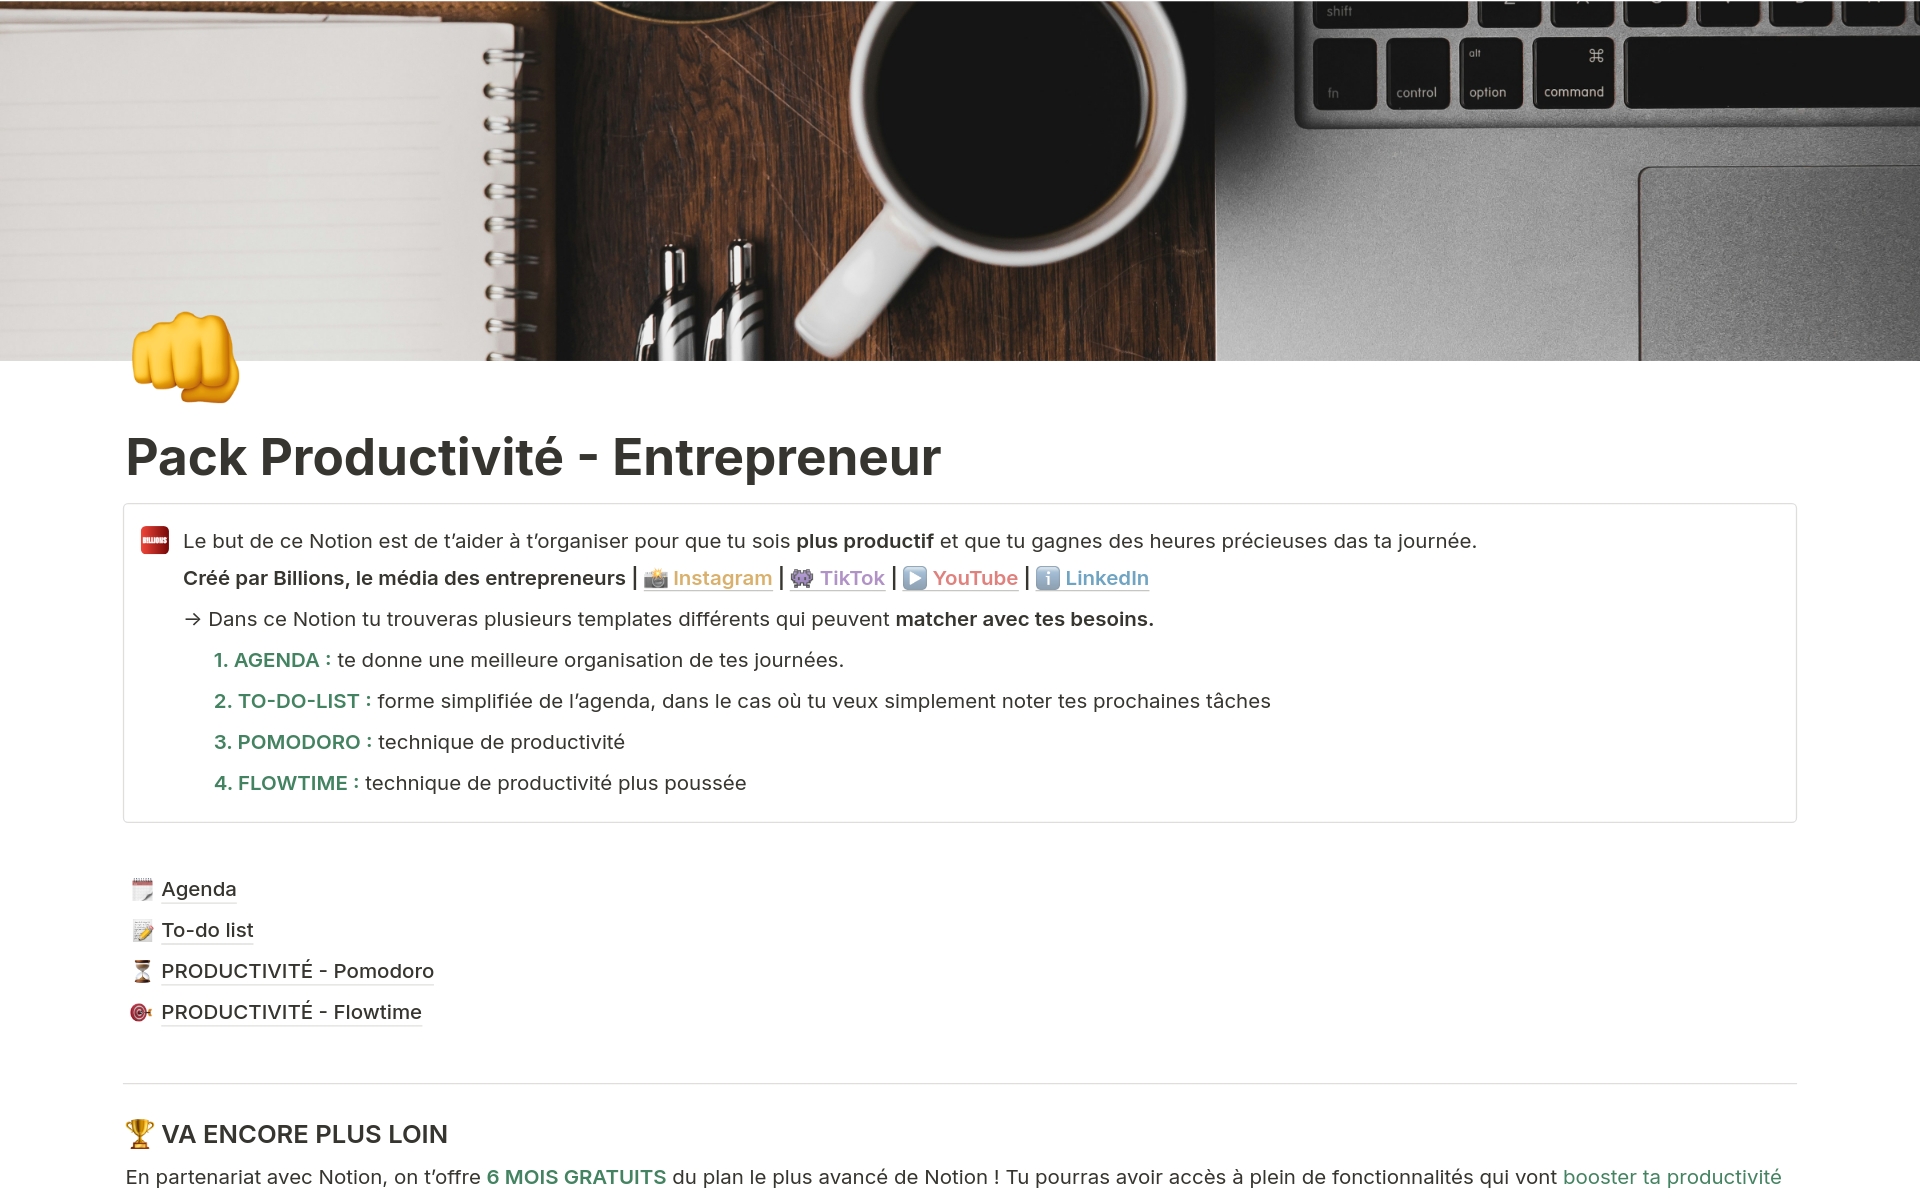 A template preview for Pack Productivité - Entrepreneur